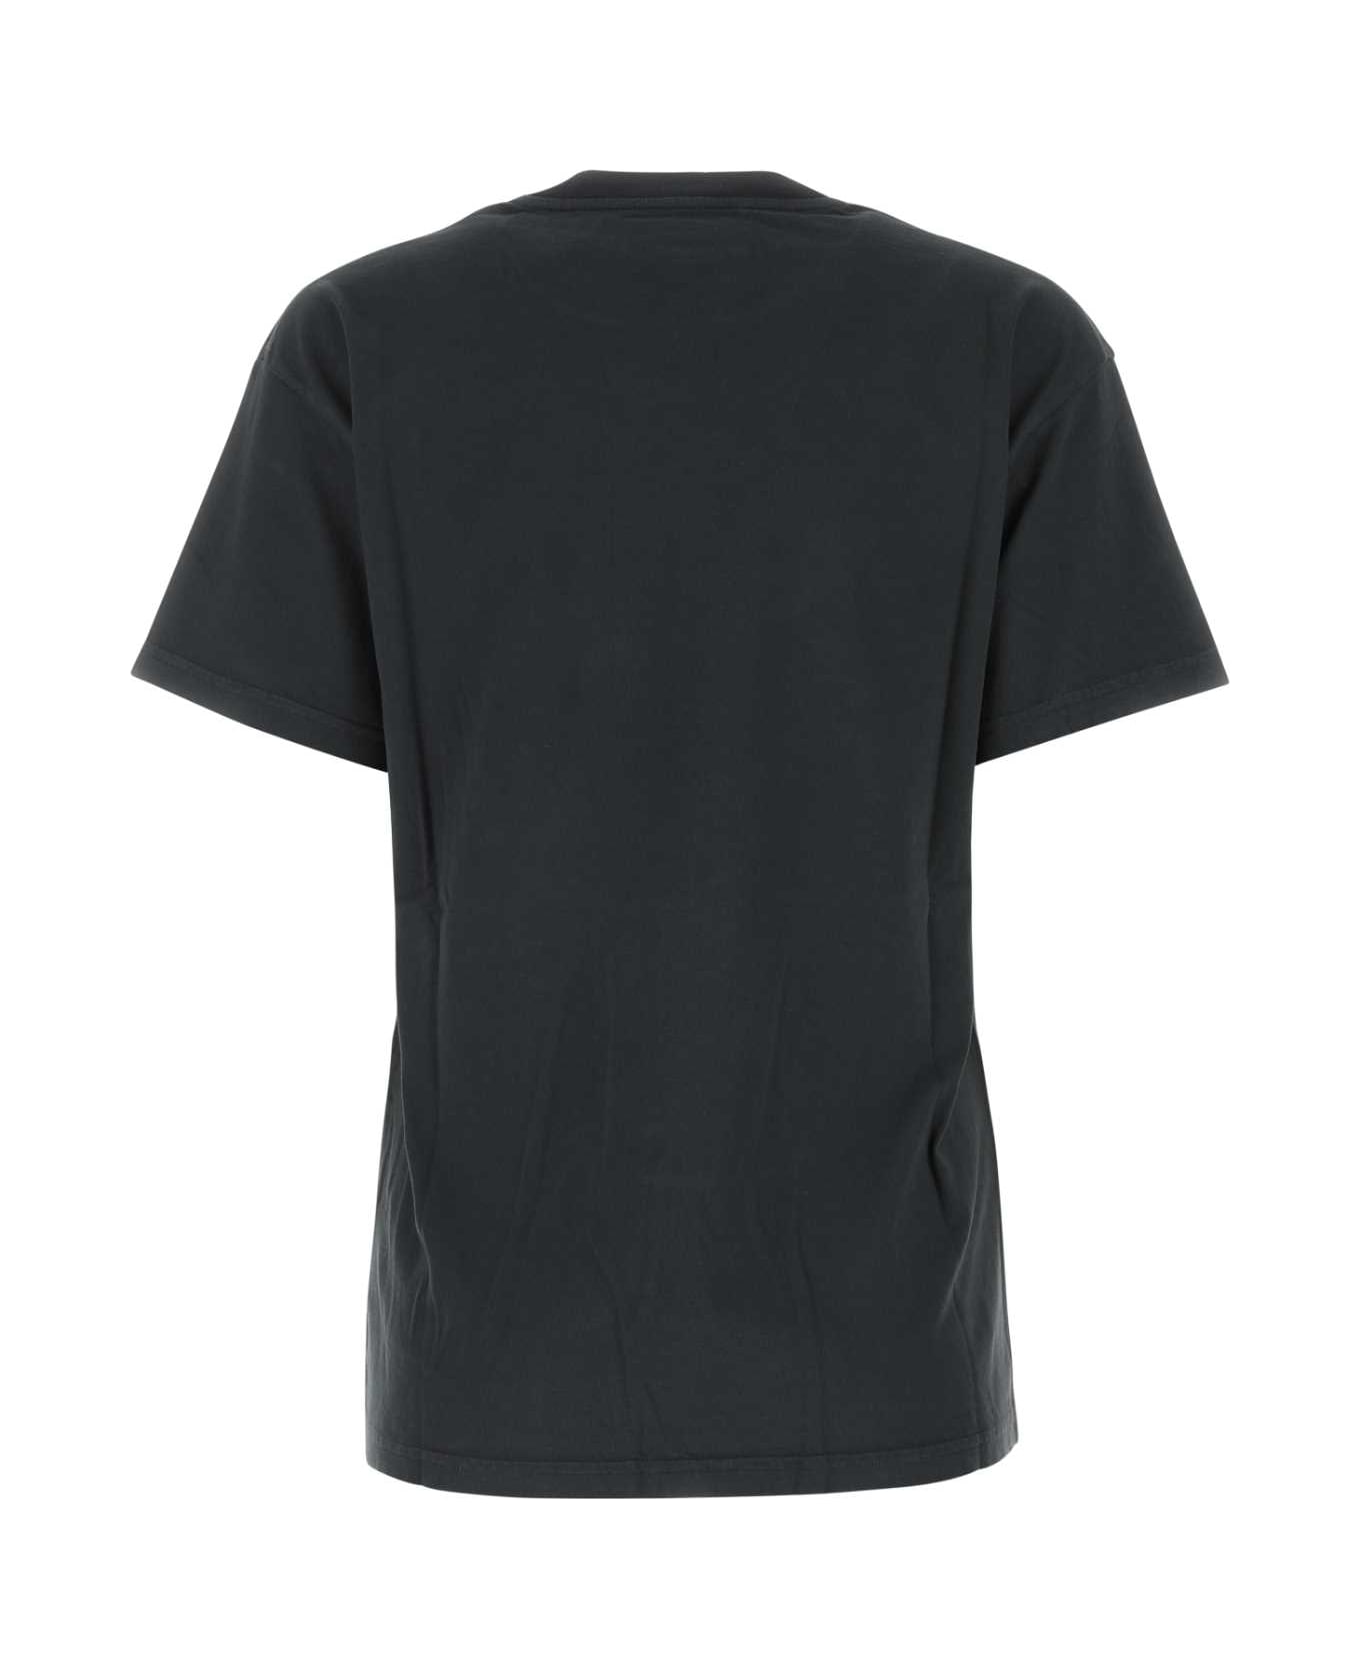 Maison Margiela Black Cotton T-shirt - 861